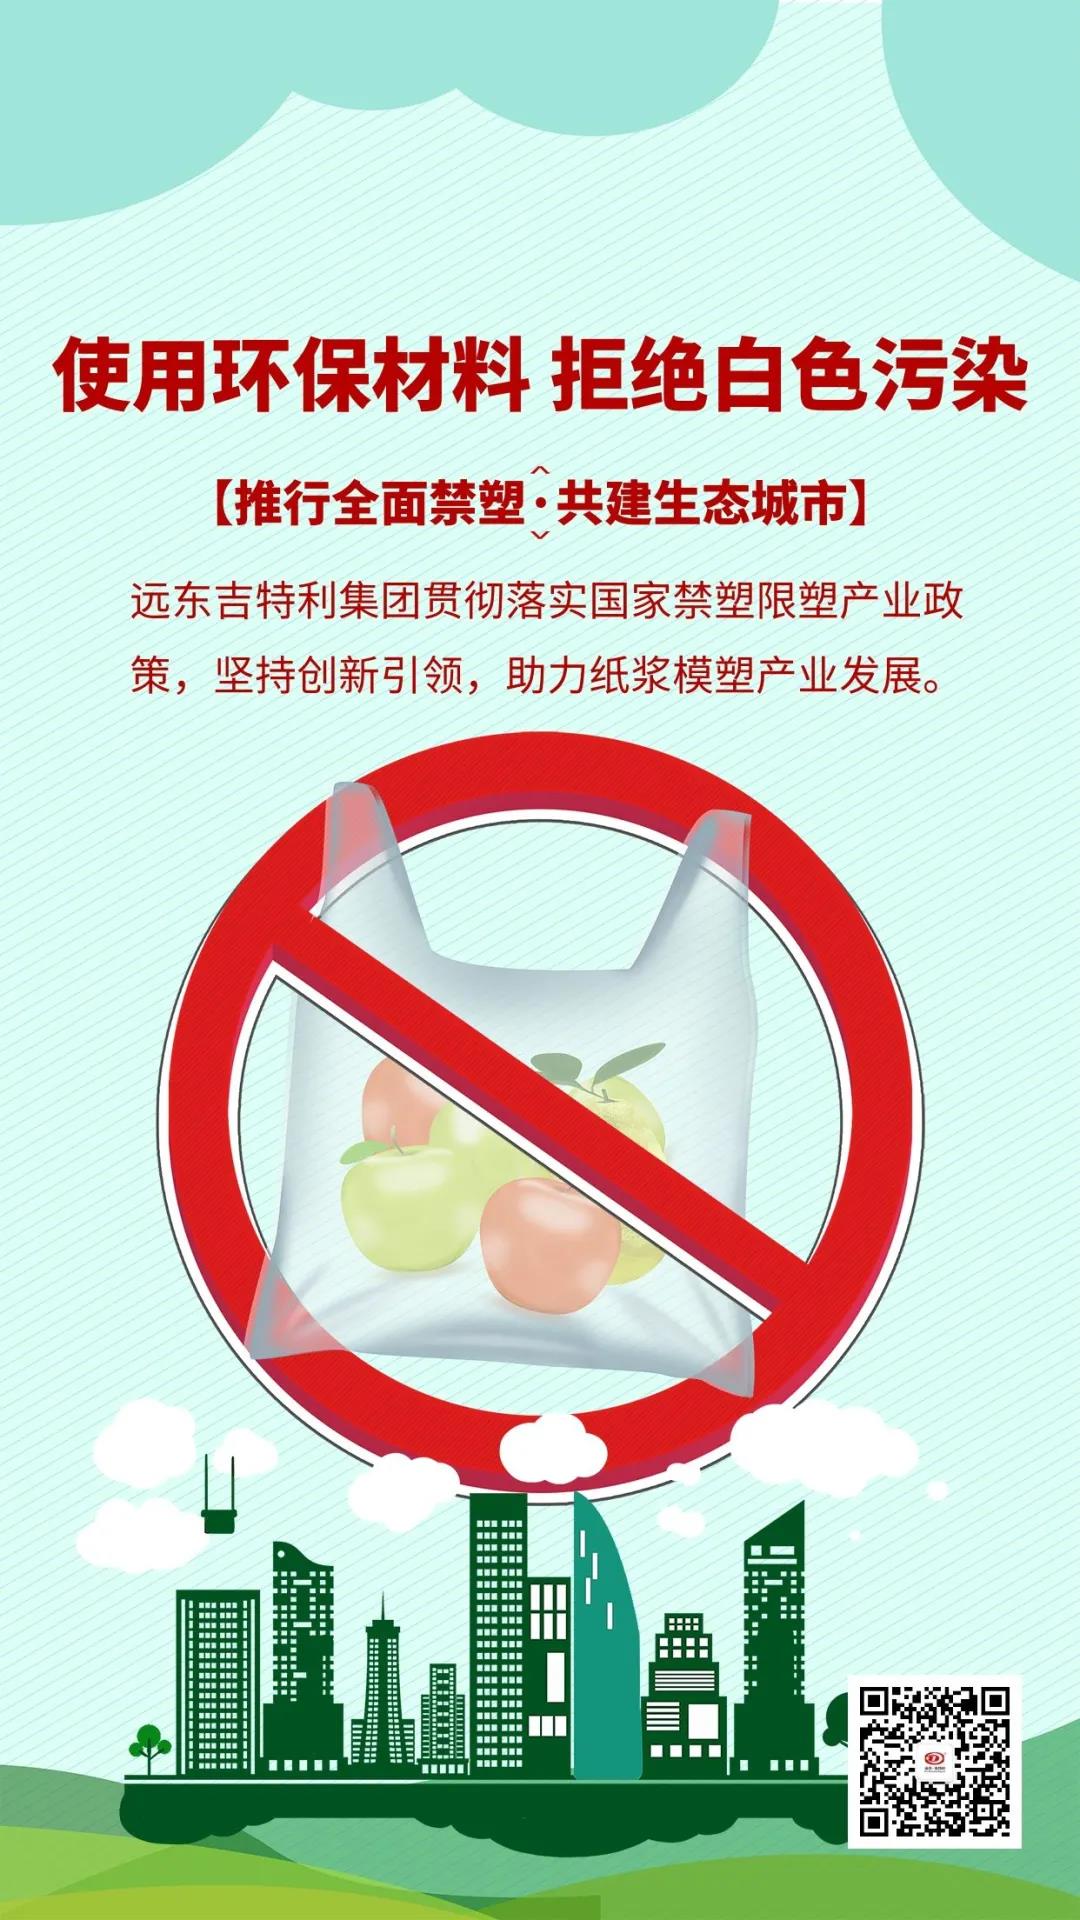 Proposition visant à interdire les plastiques et à plaider en faveur des emballages alimentaires biodégradables pour le moulage de pulpe de bagasse de canne à sucre !